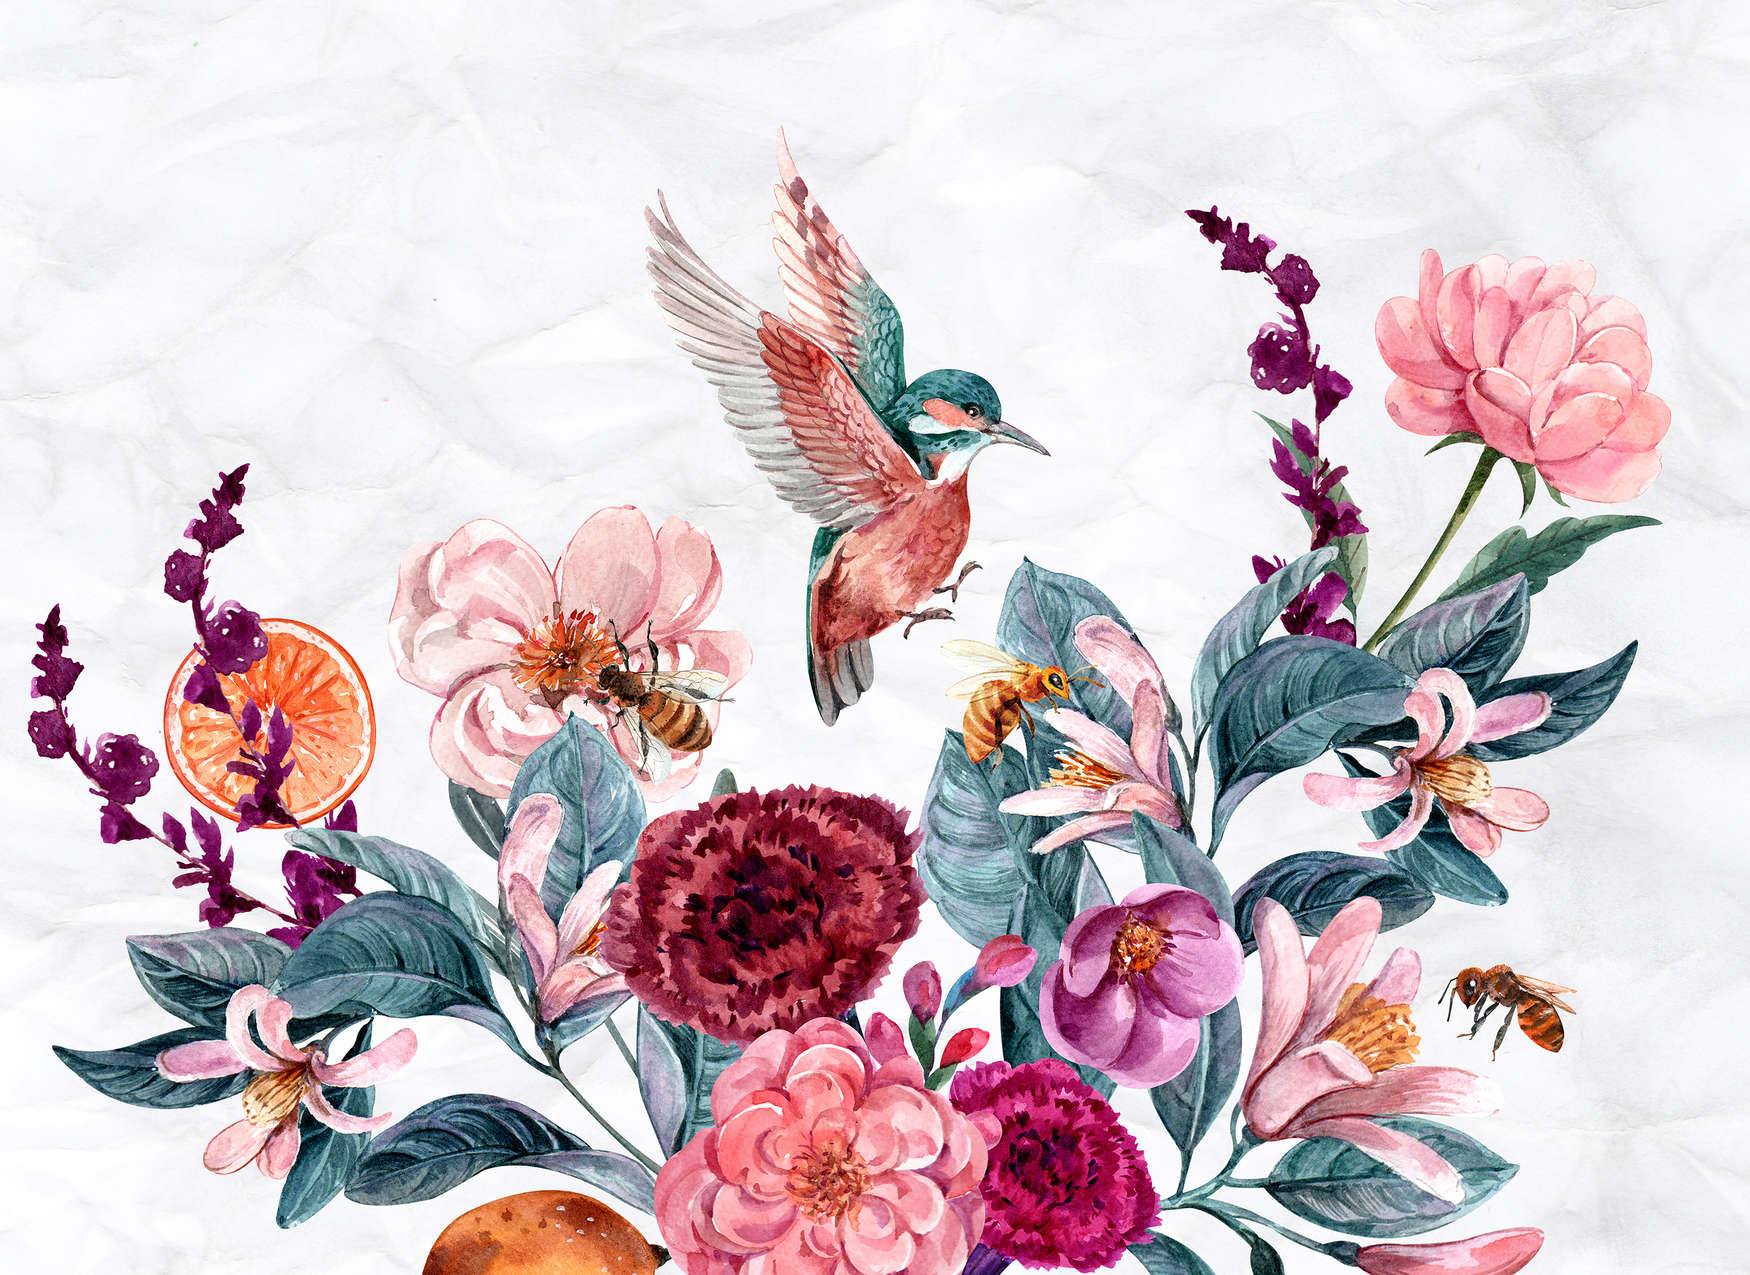             Papier peint fleurs & oiseaux sur fond 3D - rose, vert, blanc
        